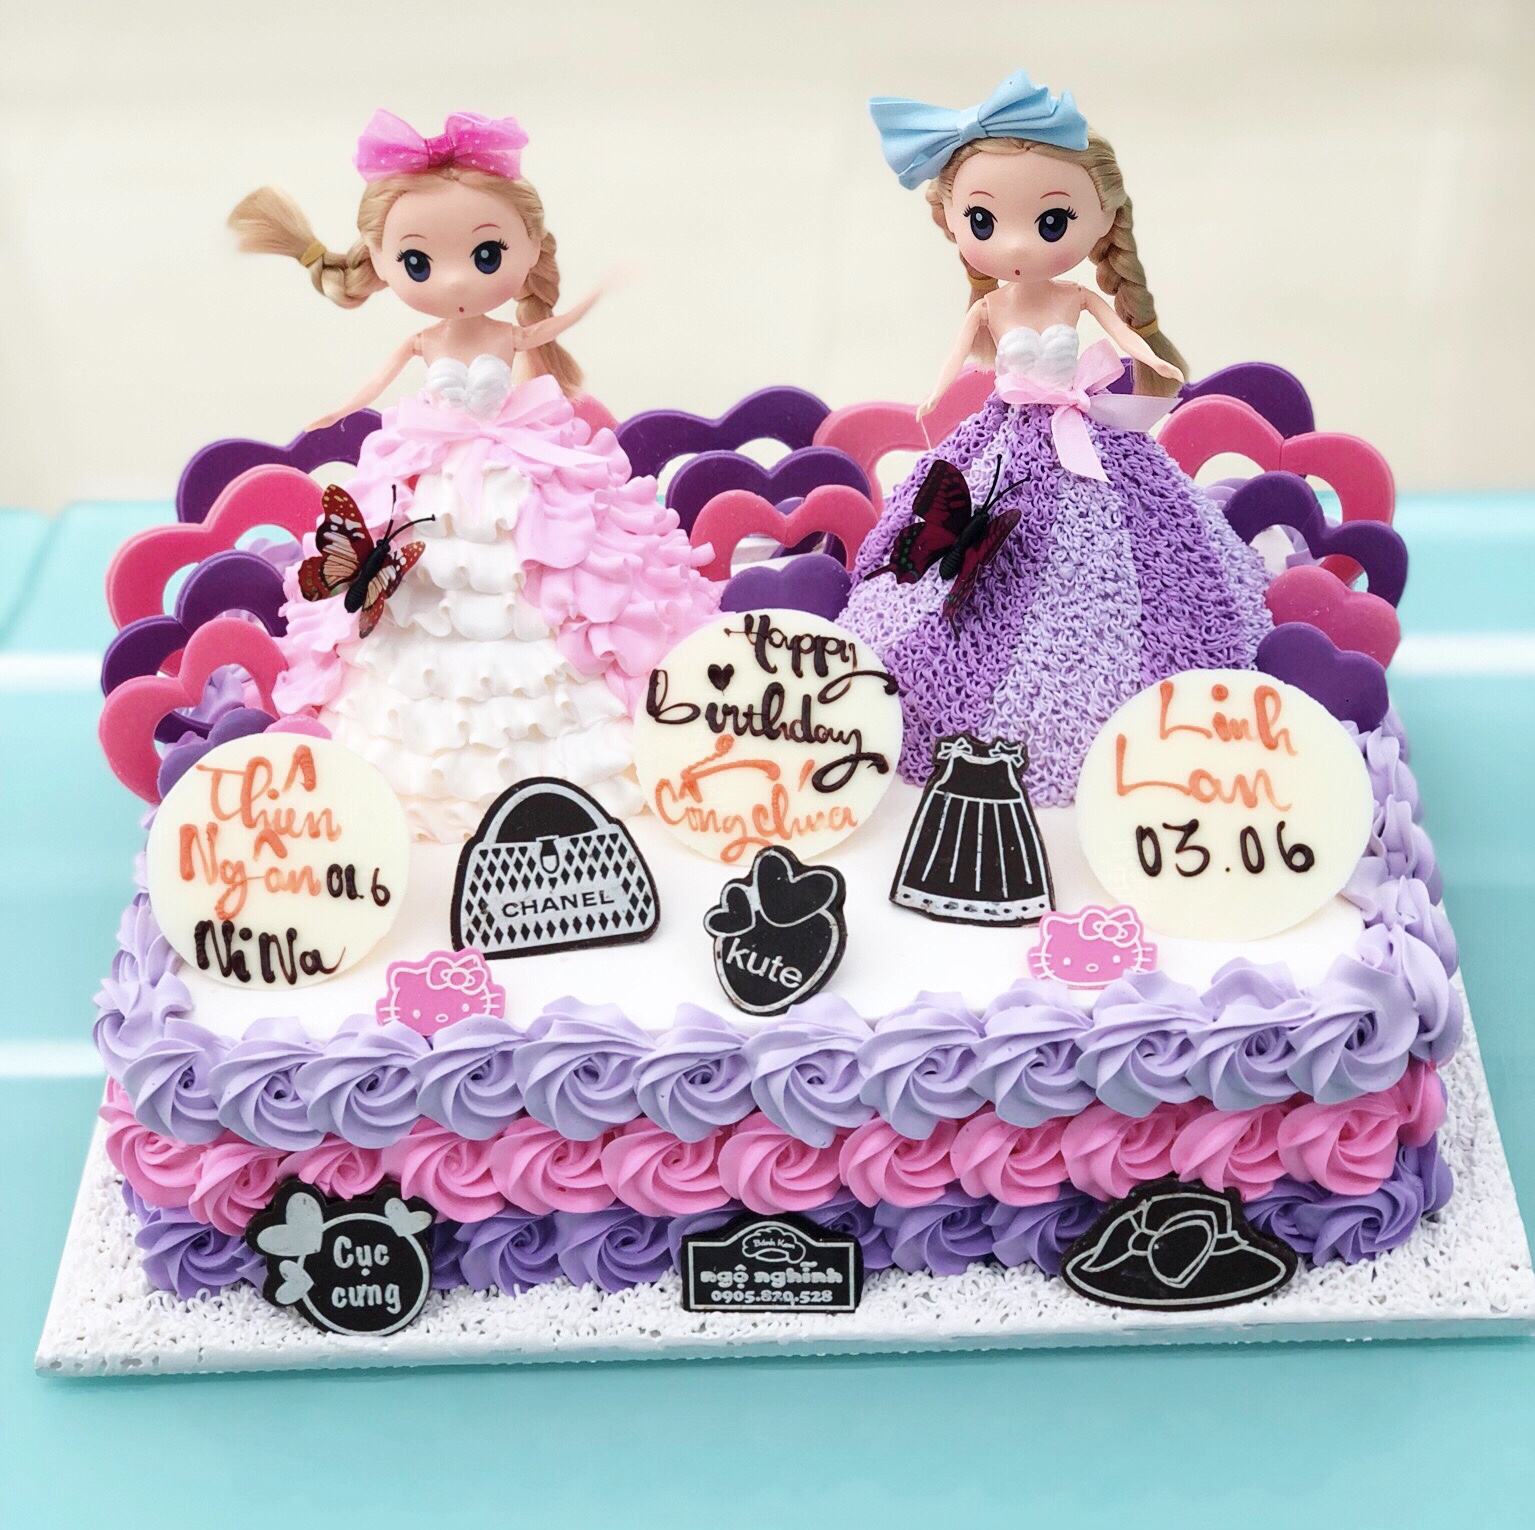 Bánh sinh nhật tạo hình công chúa chibi màu tím và màu hồng dễ ...